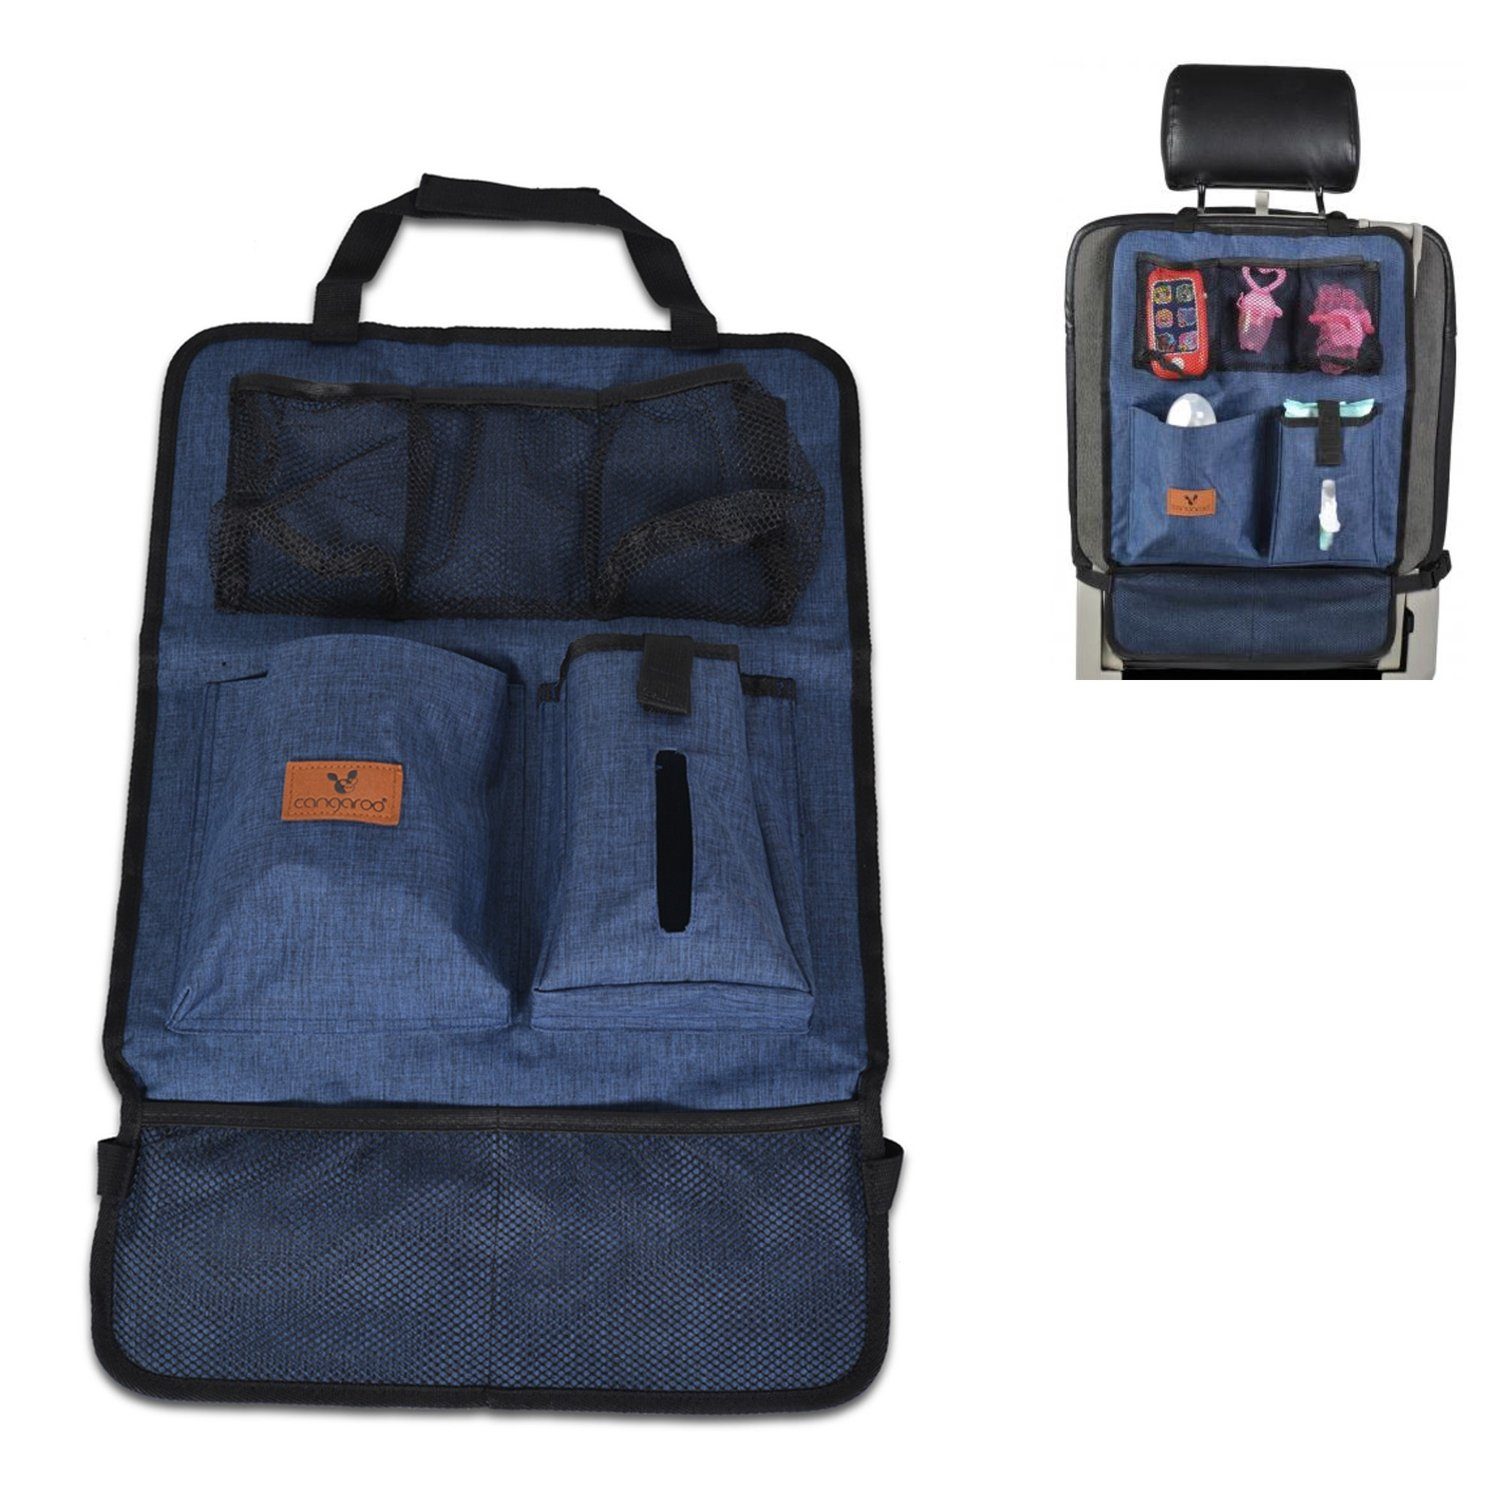 Cangaroo Auto-Rückenlehnentasche Organizer für Auto mit Taschen (1-tlg), Reise Organizer Rückenlehnenschutz mit Taschen